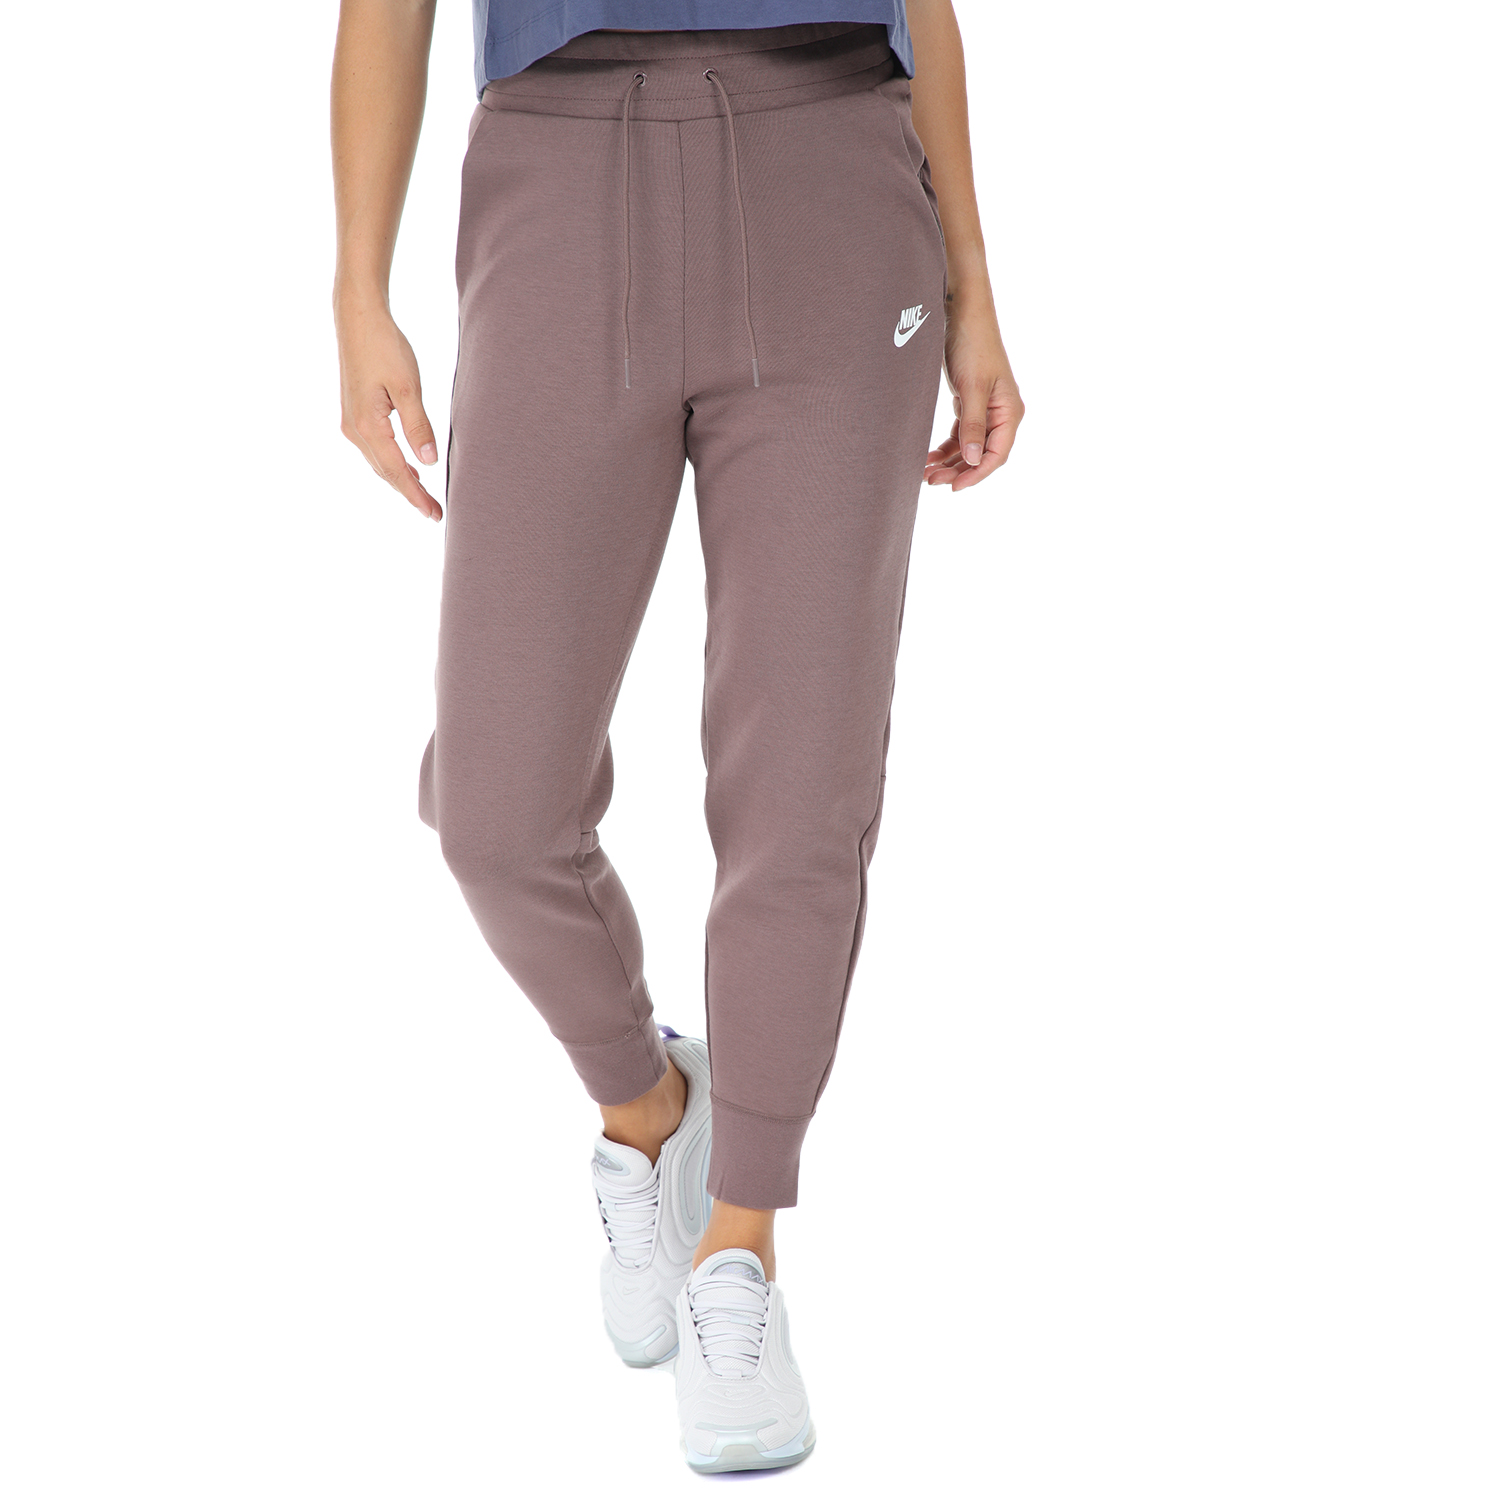 Γυναικεία/Ρούχα/Αθλητικά/Φόρμες NIKE - Γυναικείο παντελόνι φόρμας Nike NSW TCH FLC μοβ